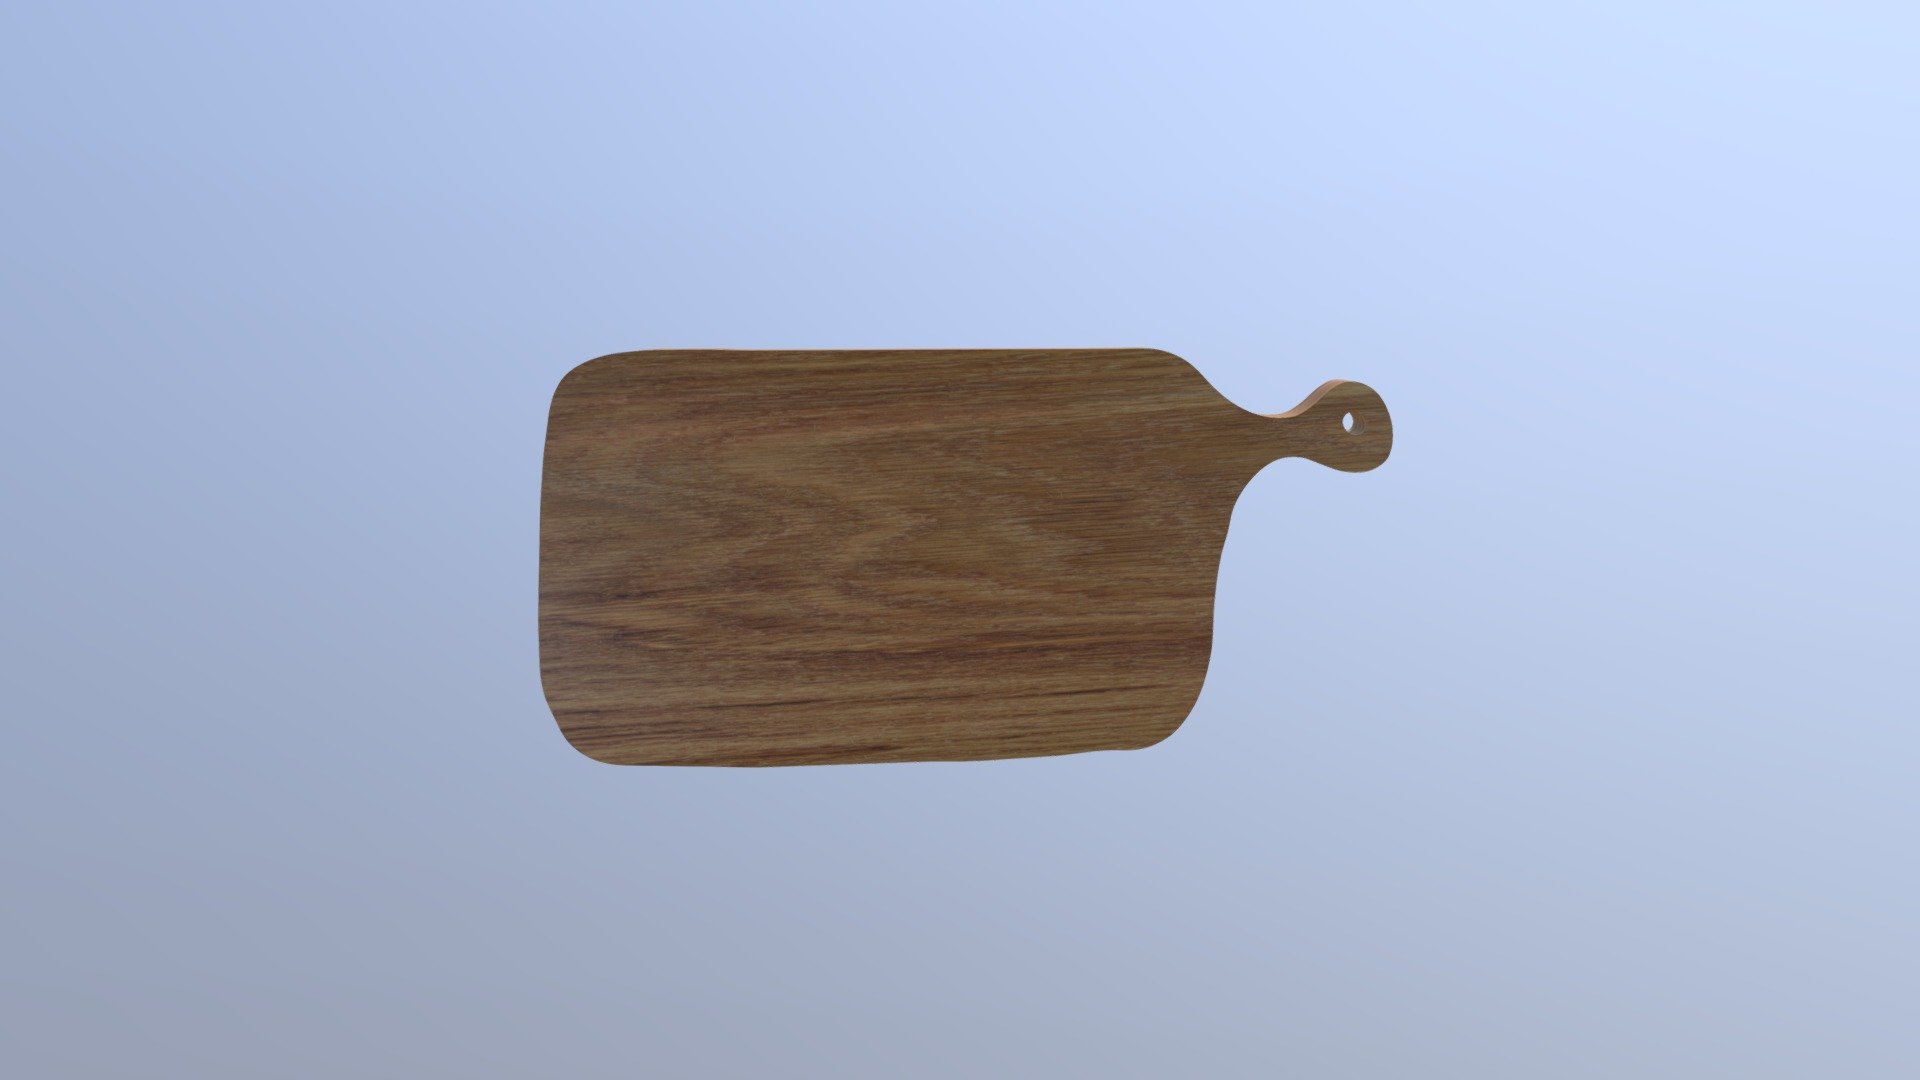 17.  Big oak wooden chopping board - 3D model by BMCWood 3d model